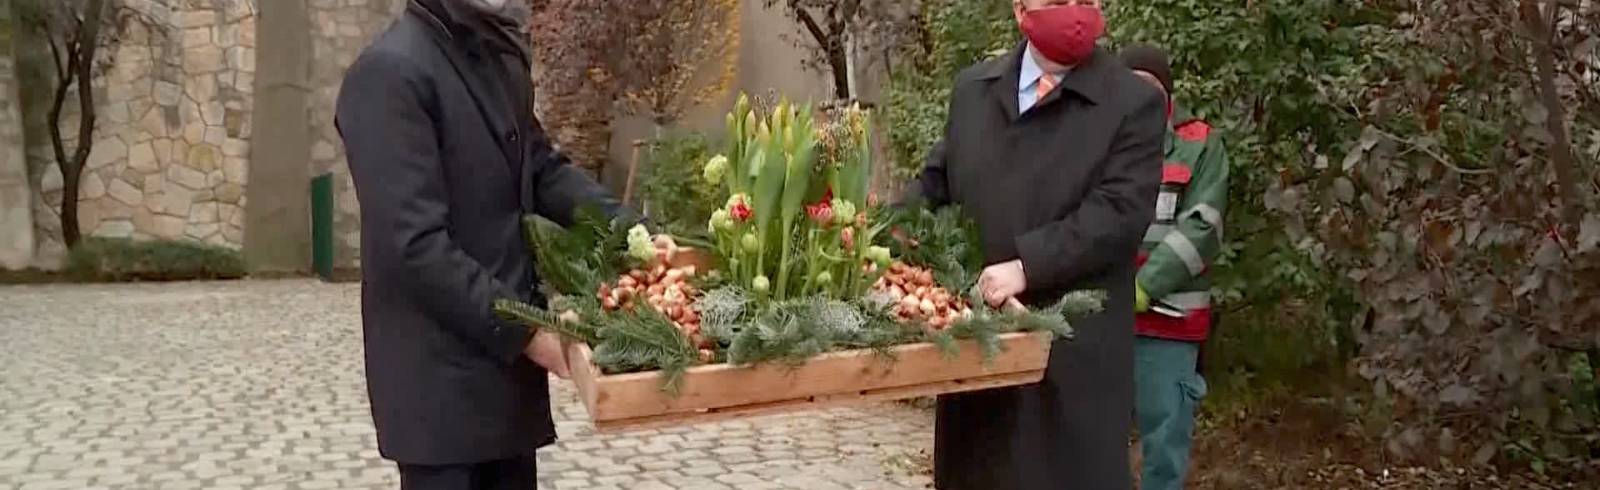 Solidaritätsgeste: 10.000 Tulpen für Wien